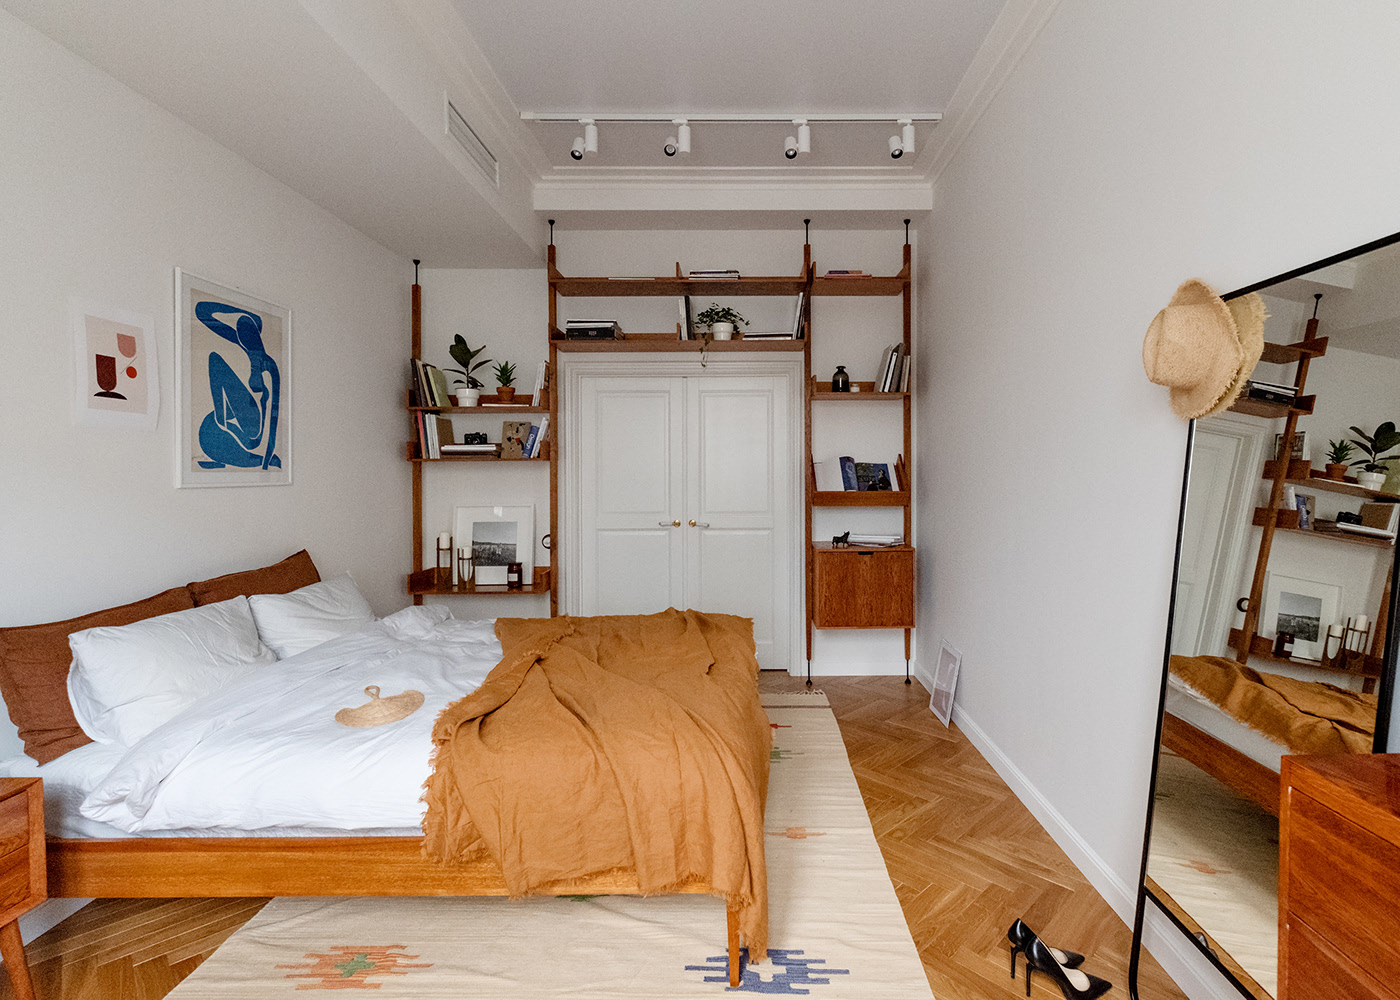 Mời bạn tham quan phòng ngủ của chủ nhân, khu vực nghỉ ngơi thư giãn vẫn trung thành với hai gam màu trắng tinh khôi cho nền tường và nội thất nâu trầm ấm áp.